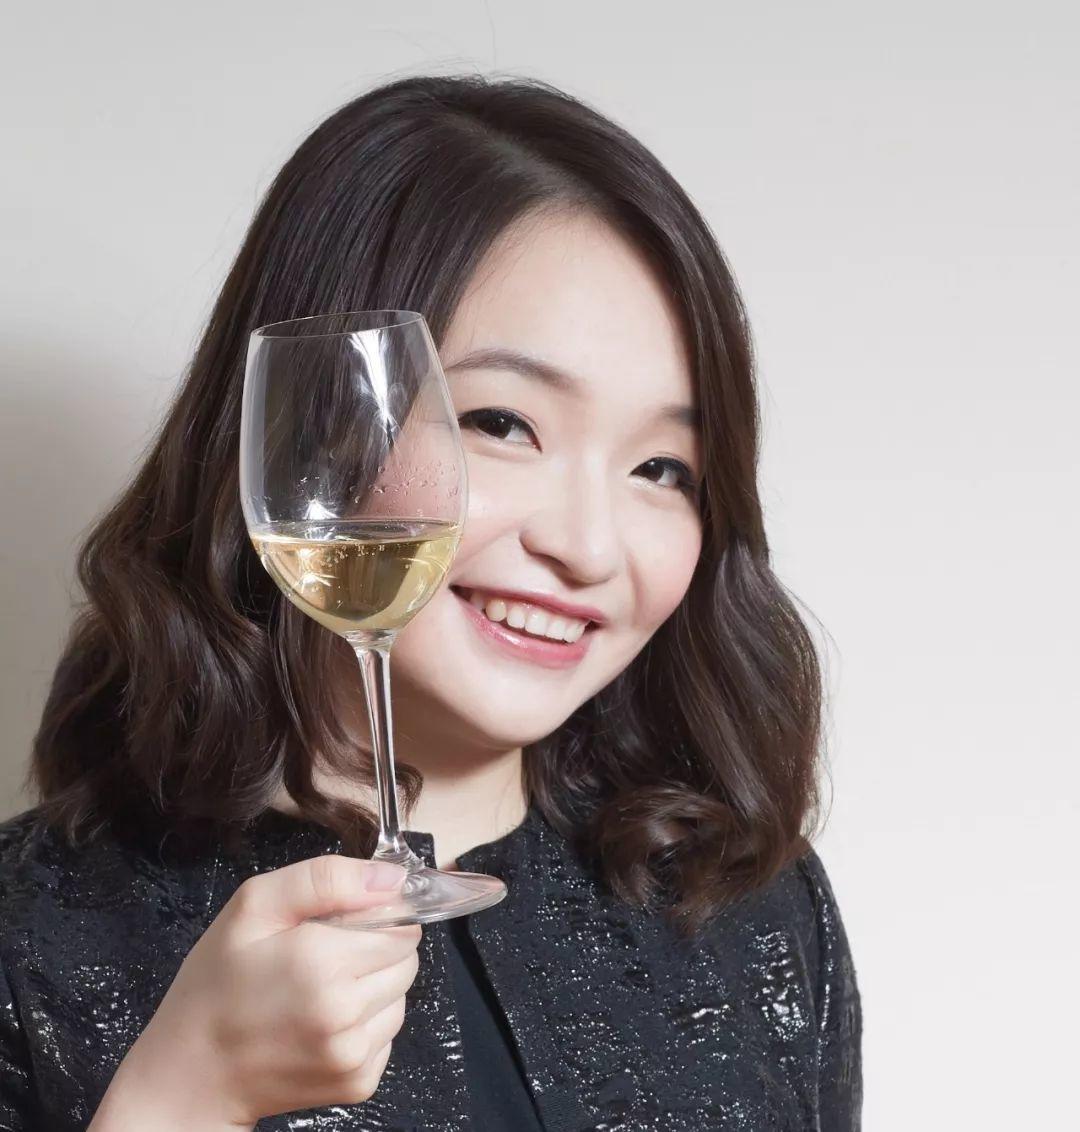 2018香槟市场报告| 大中华区持续攀升，大家都开始喝香槟了！